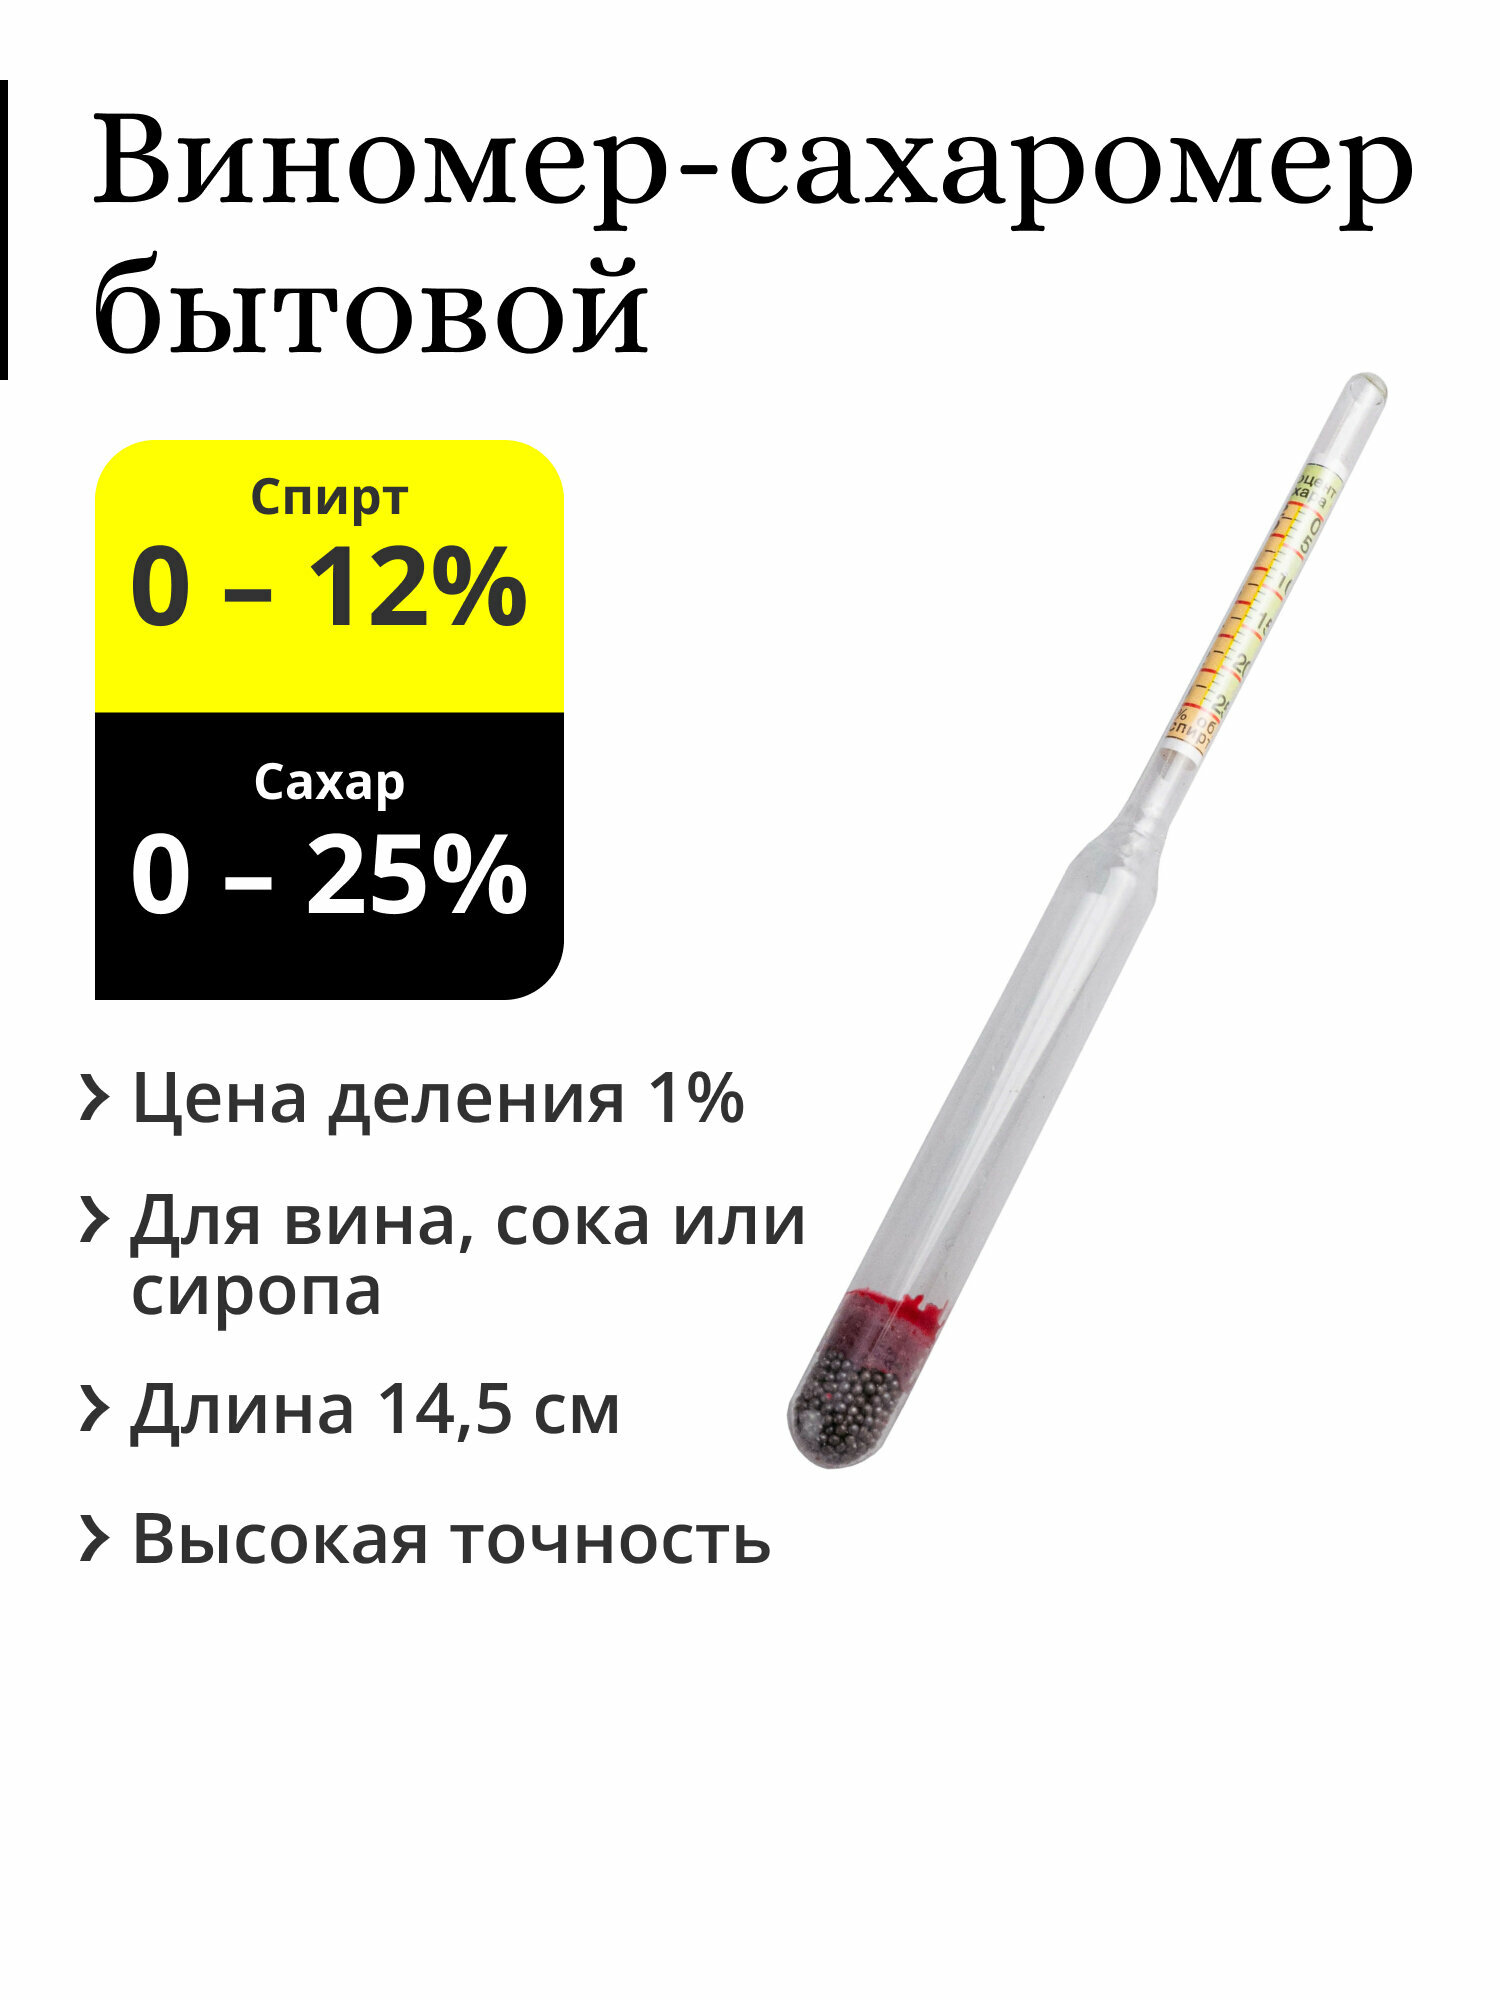 Виномер-сахаромер бытовой (спирт 0-12%, сахар 0-25%)